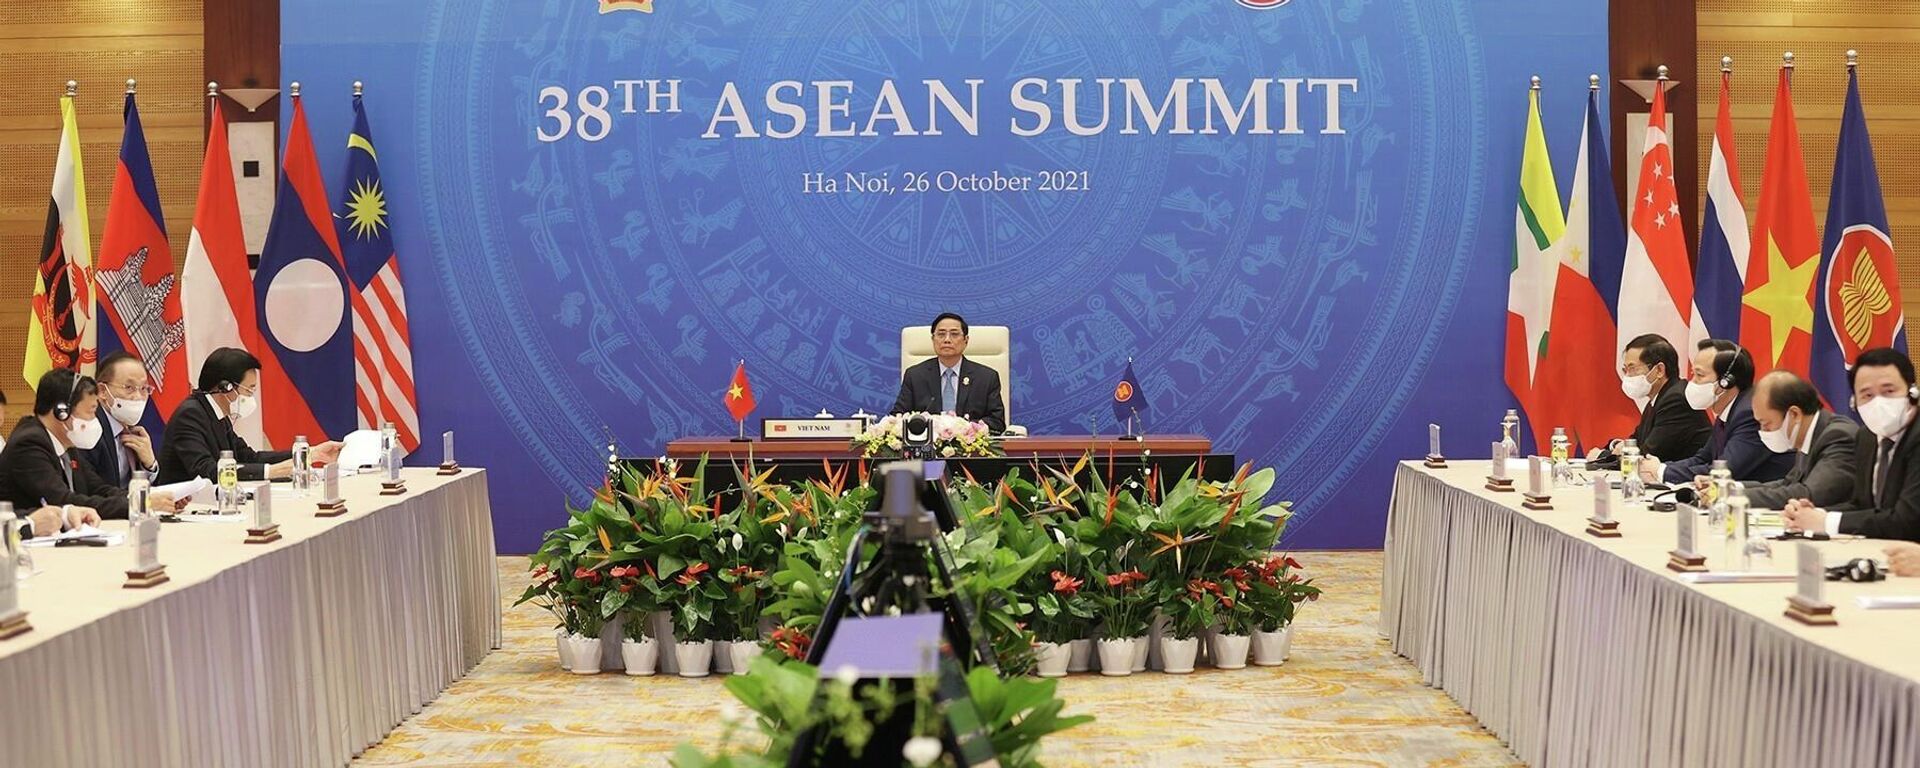 Thủ tướng Phạm Minh Chính tham dự Hội nghị cấp cao ASEAN lần thứ 38 tại điểm cầu Hà Nội. - Sputnik Việt Nam, 1920, 26.10.2021